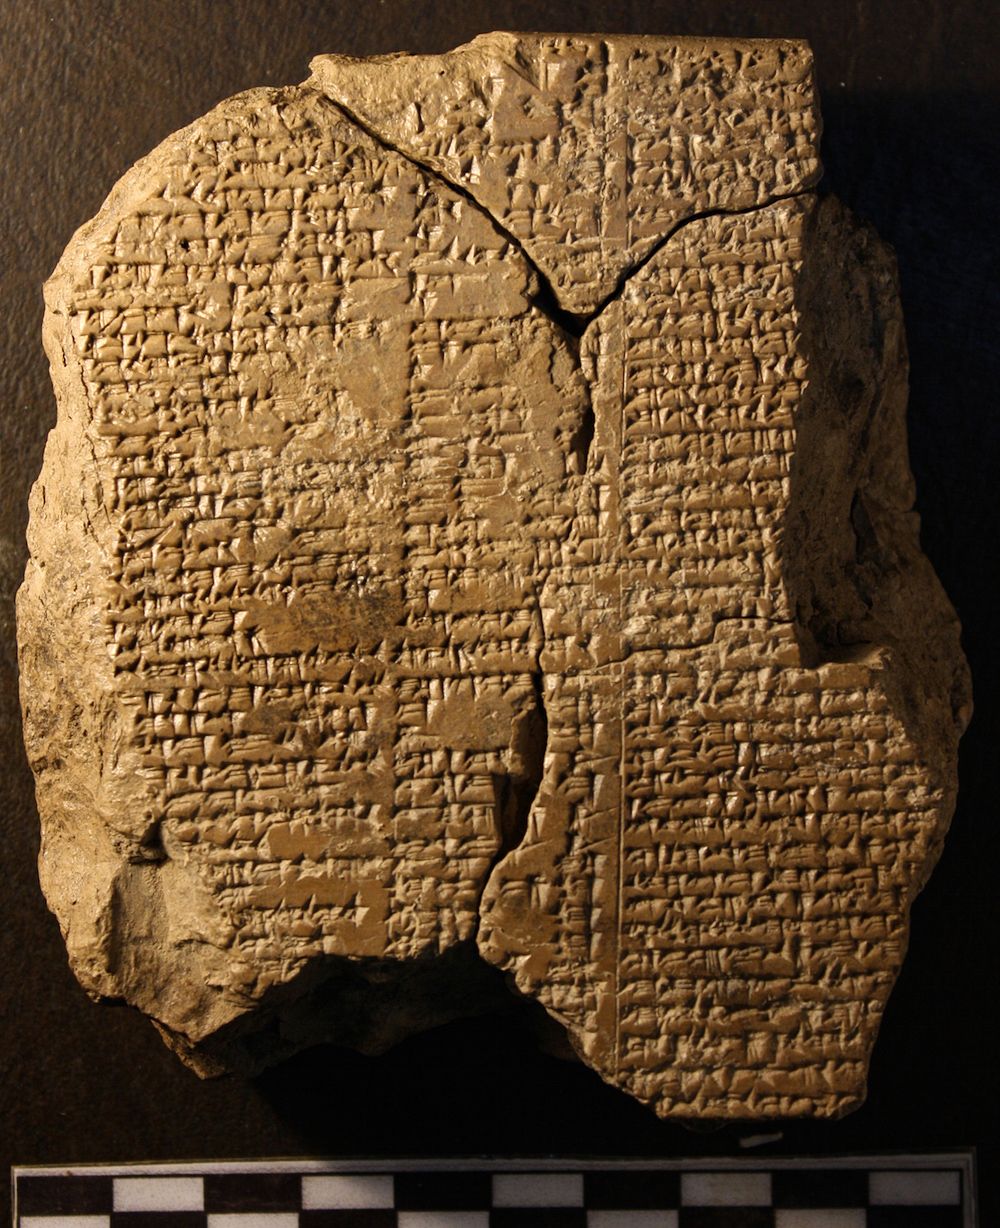 Tabletë që përmban një pjesë të Eposit të Gilgameshit